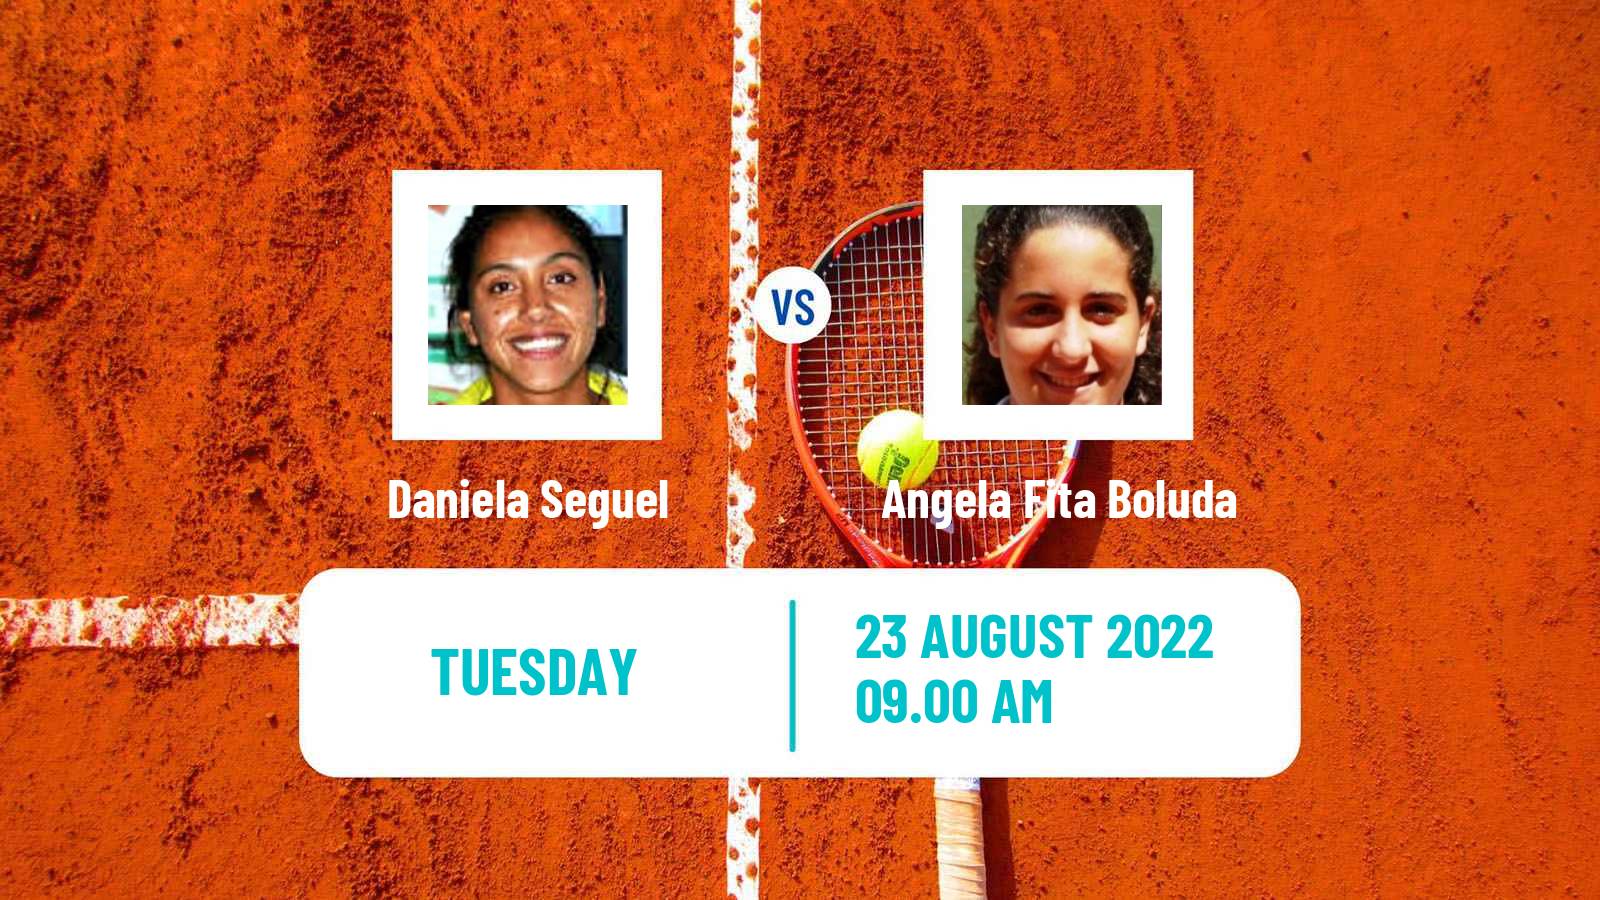 Tennis ITF Tournaments Daniela Seguel - Angela Fita Boluda